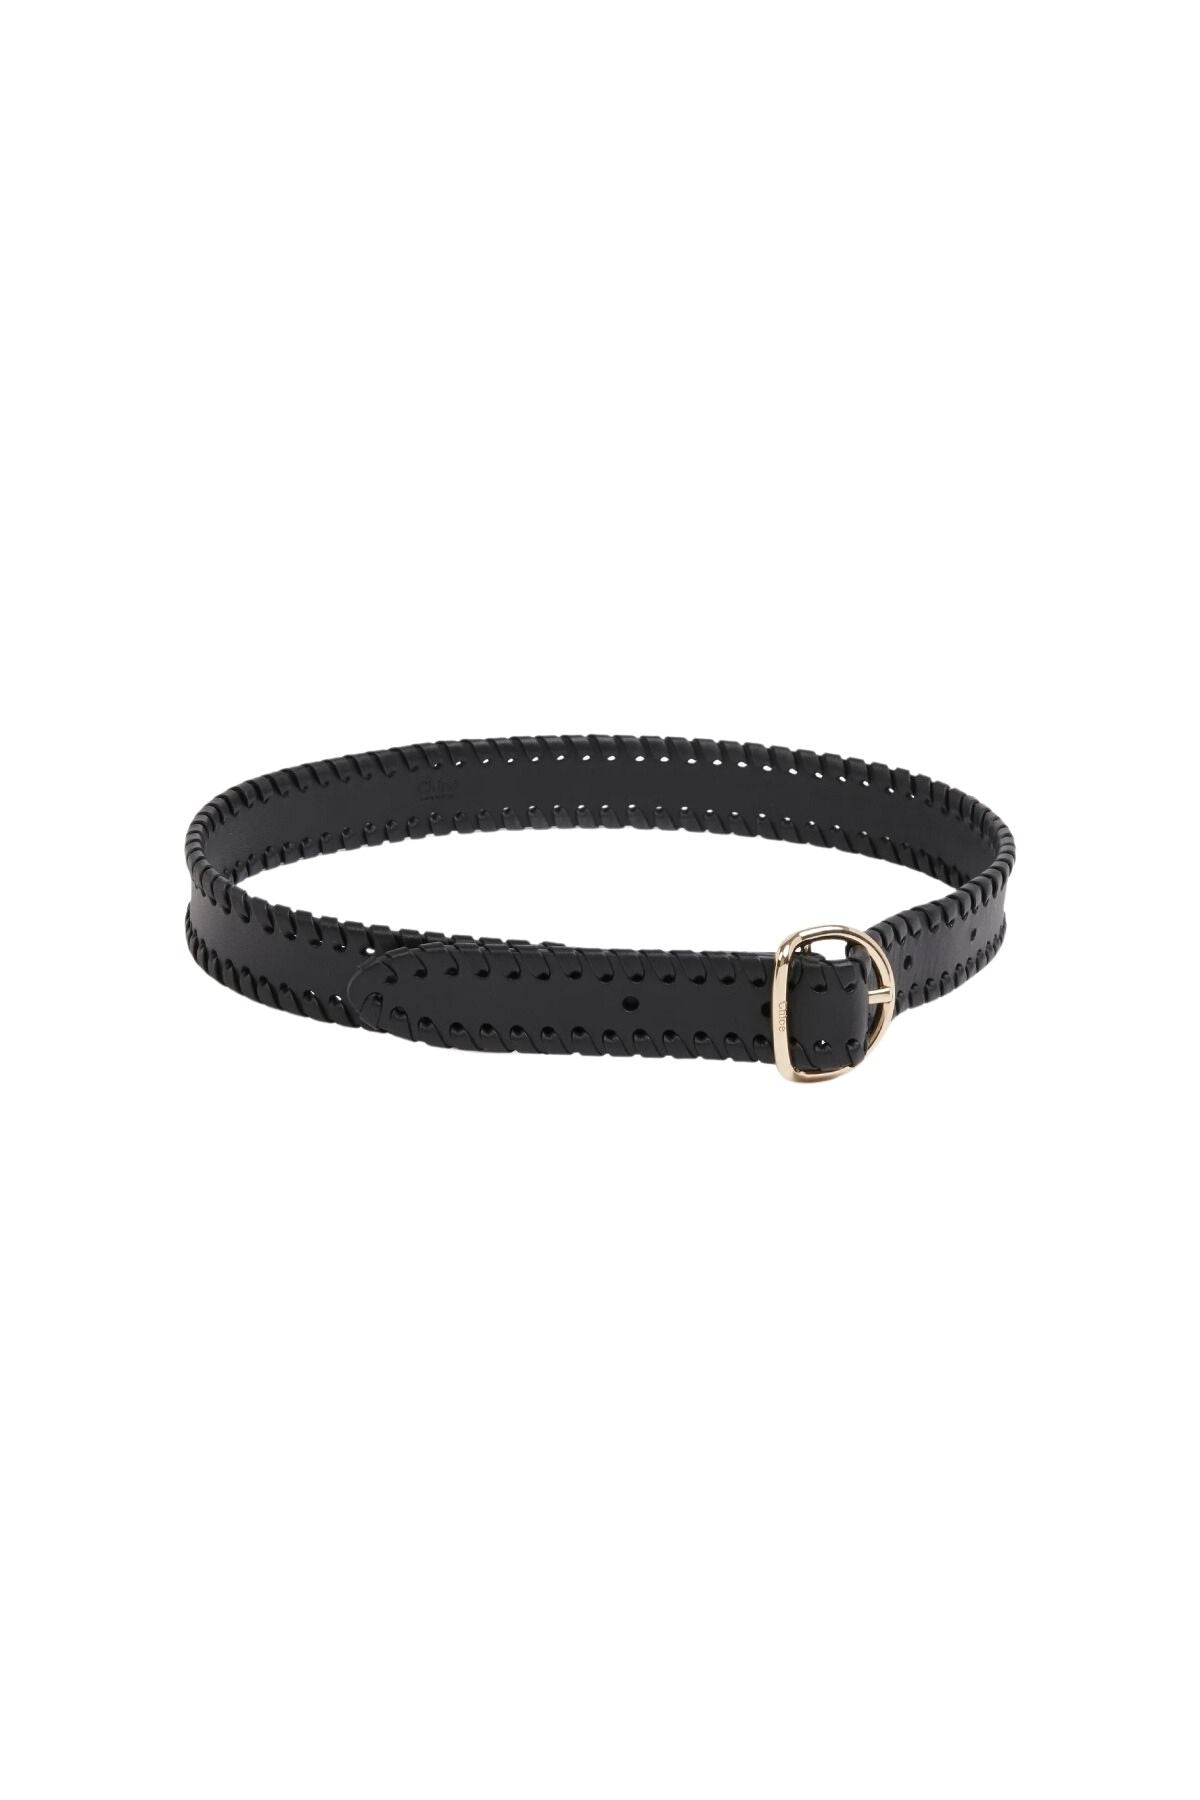 Chloé Mony Leather Belt - Black